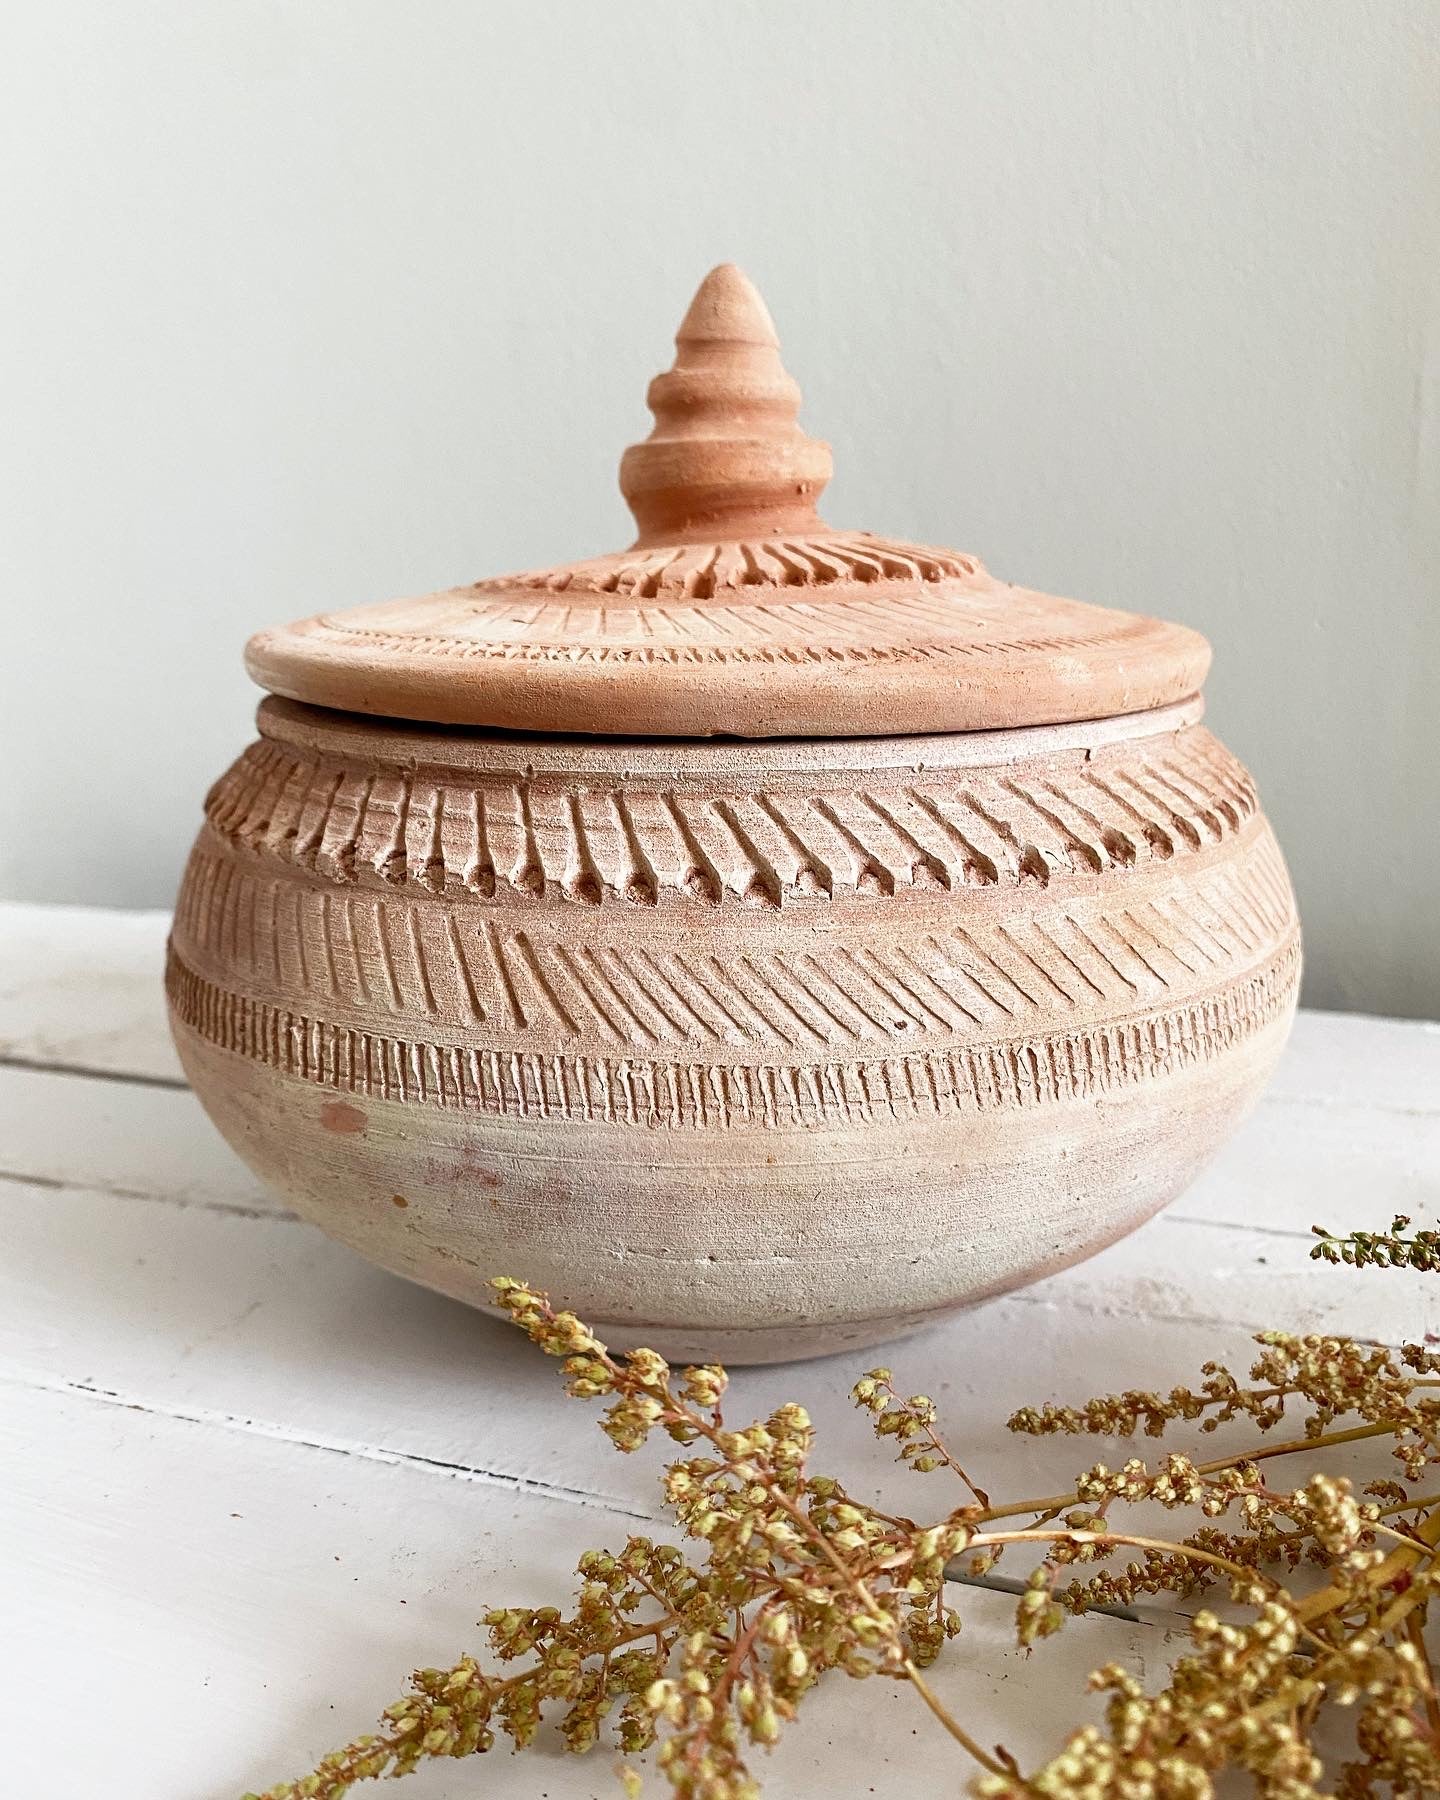 Handmade clay pot